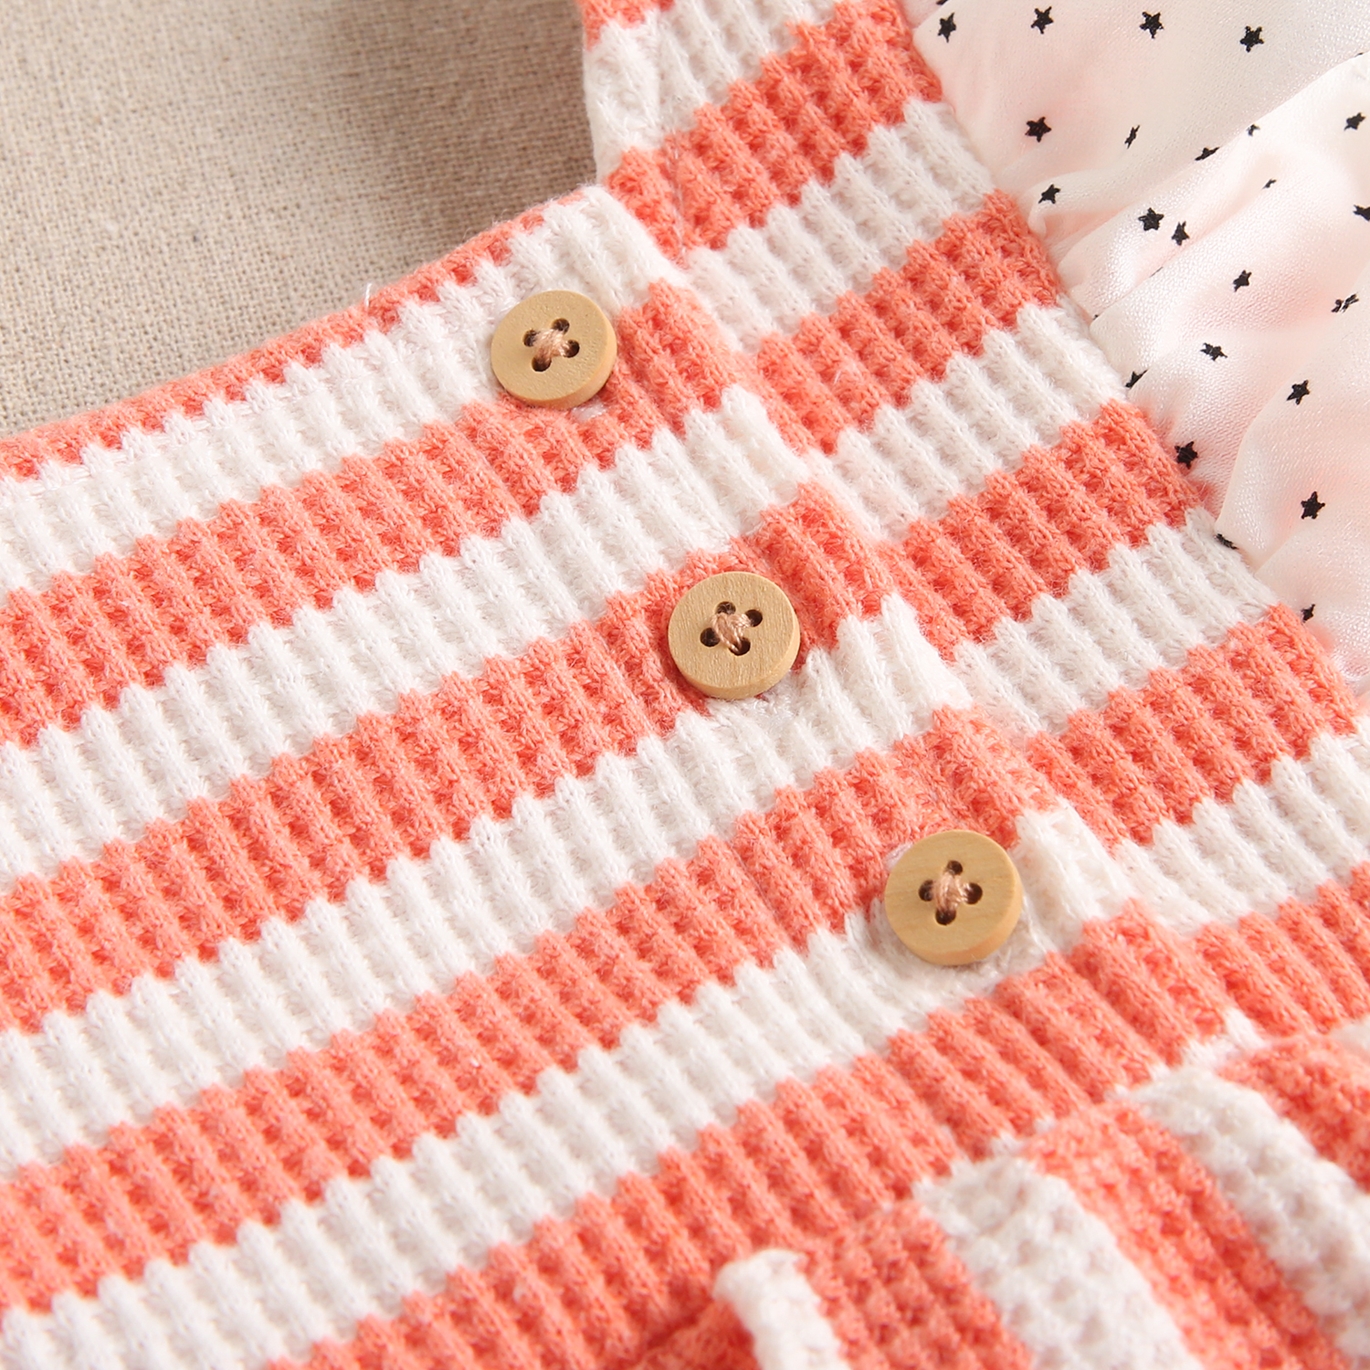 Imagen de Vestido de bebé niña con cubrepañal de rayas coral y blancas